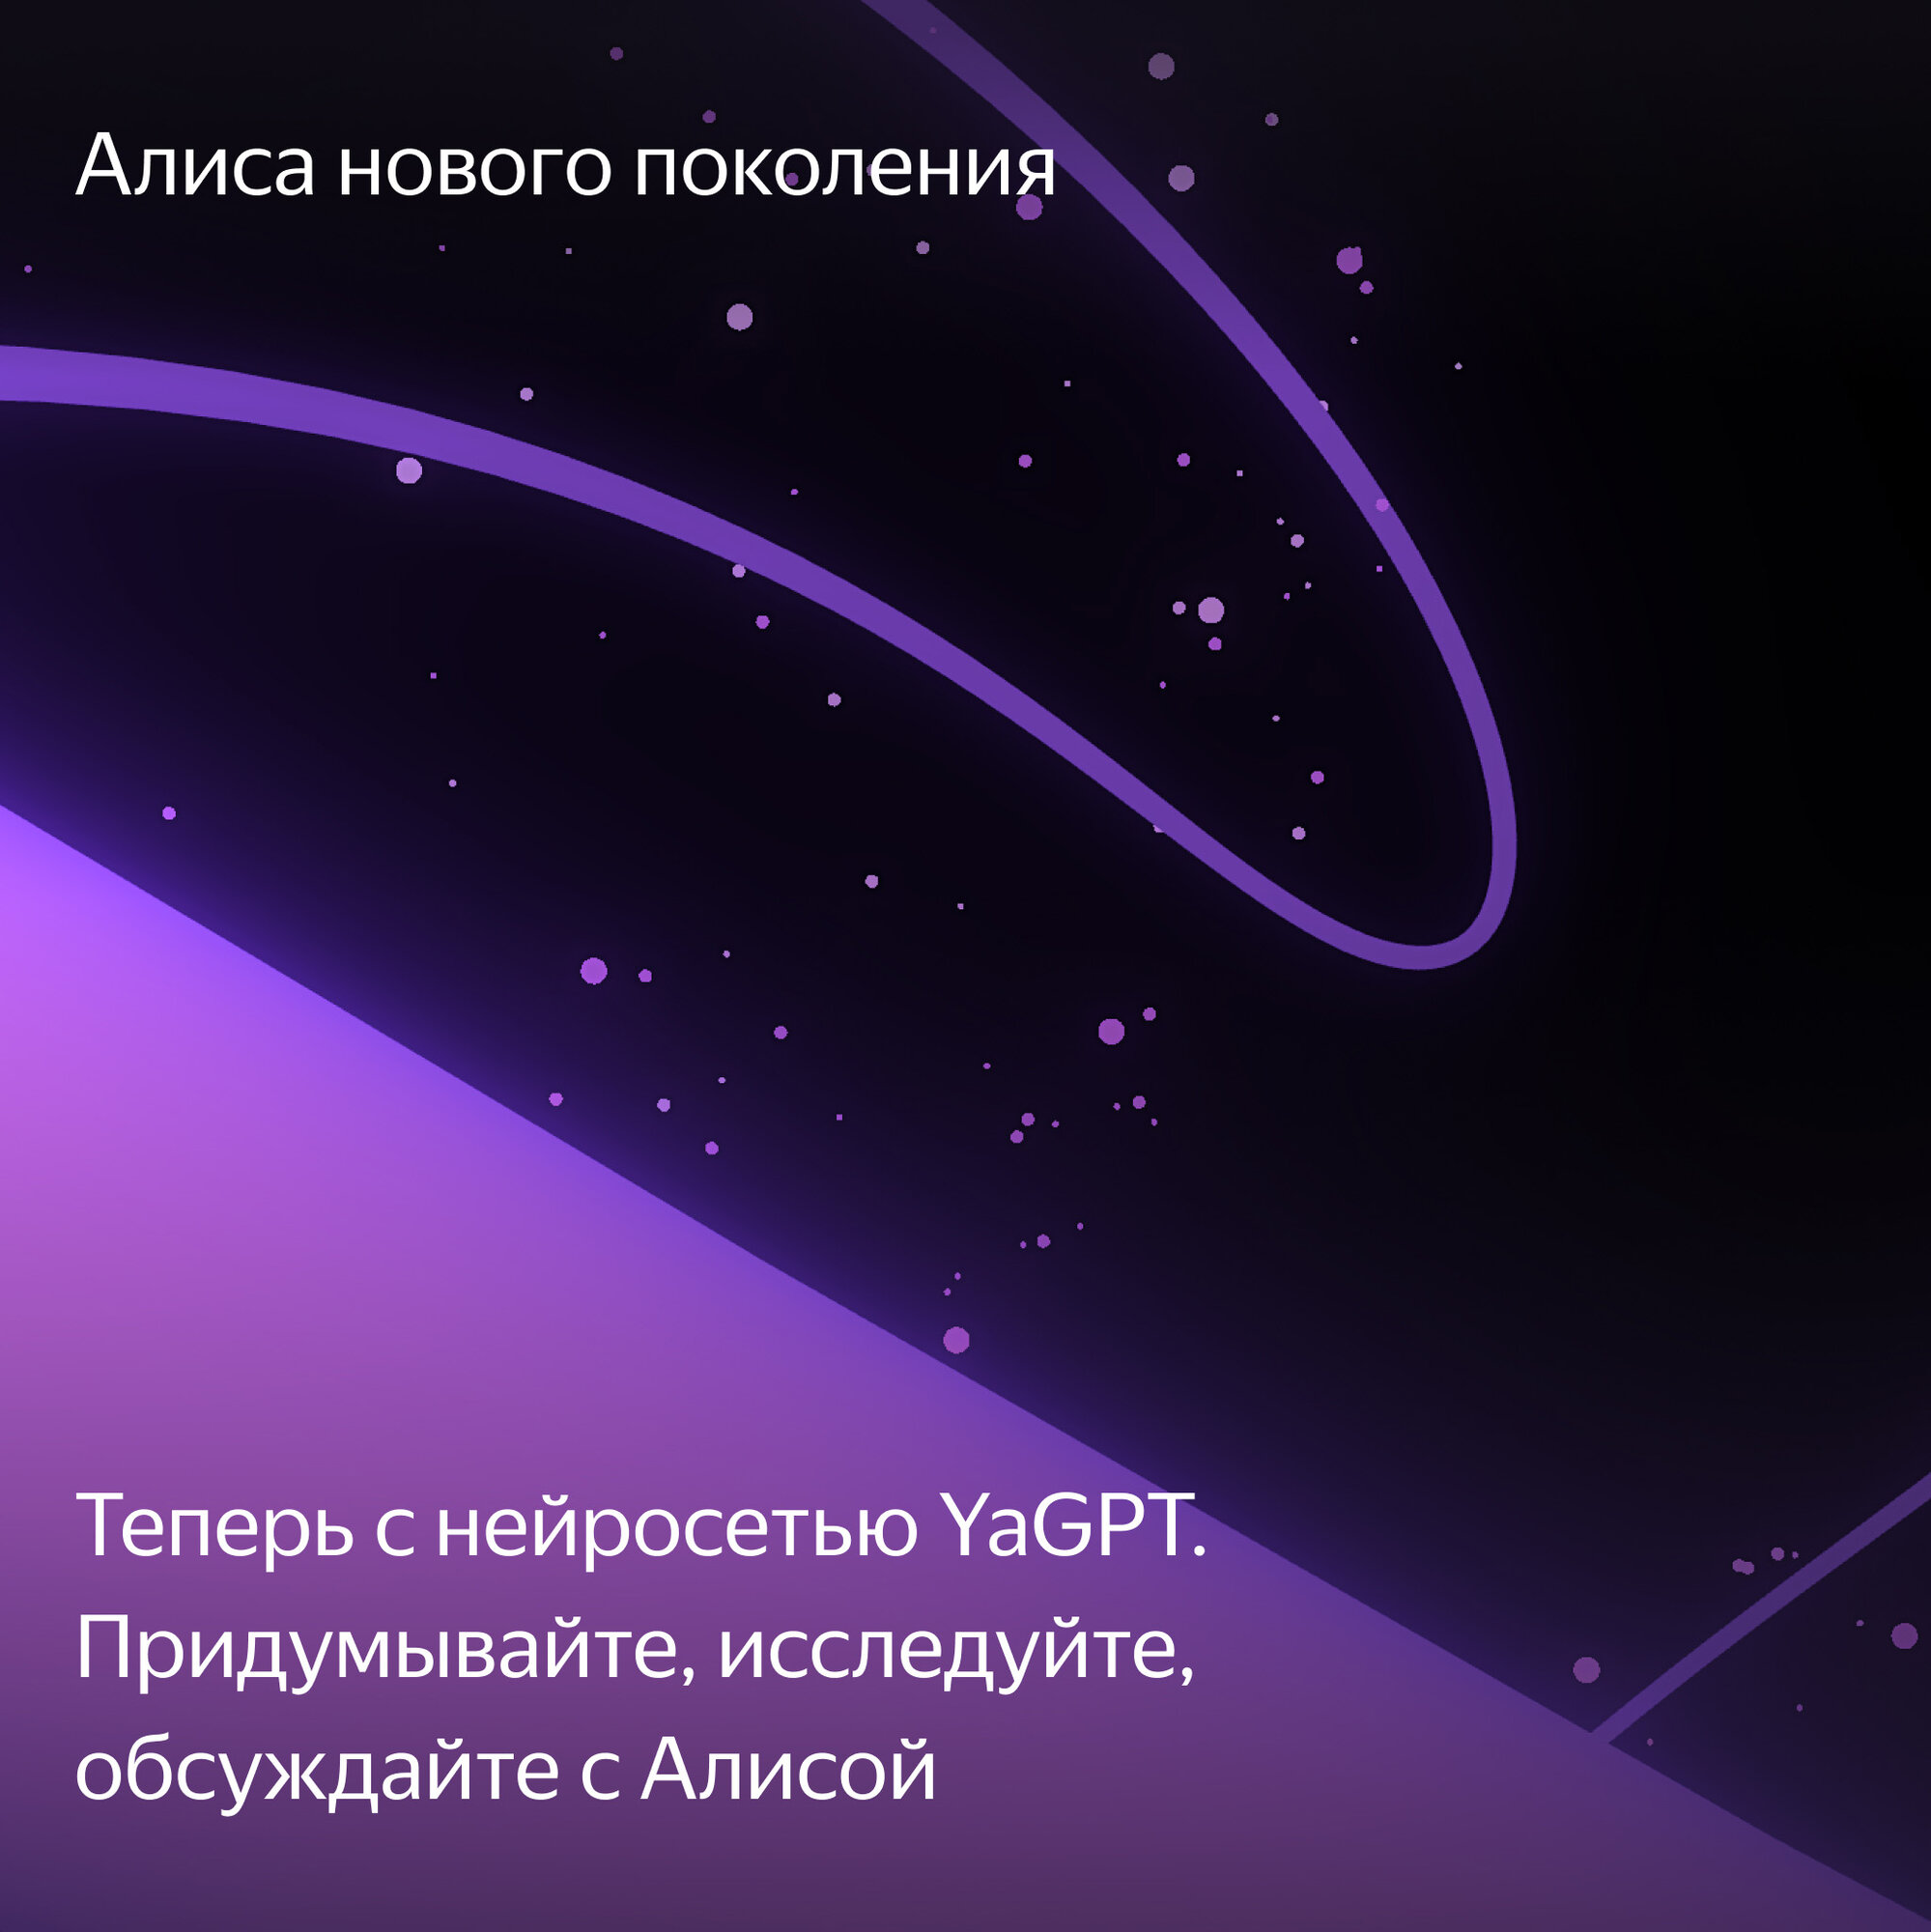 Телевизор Яндекс 50 Тв станция с Алисой 4К YNDX-00092 - фото №9